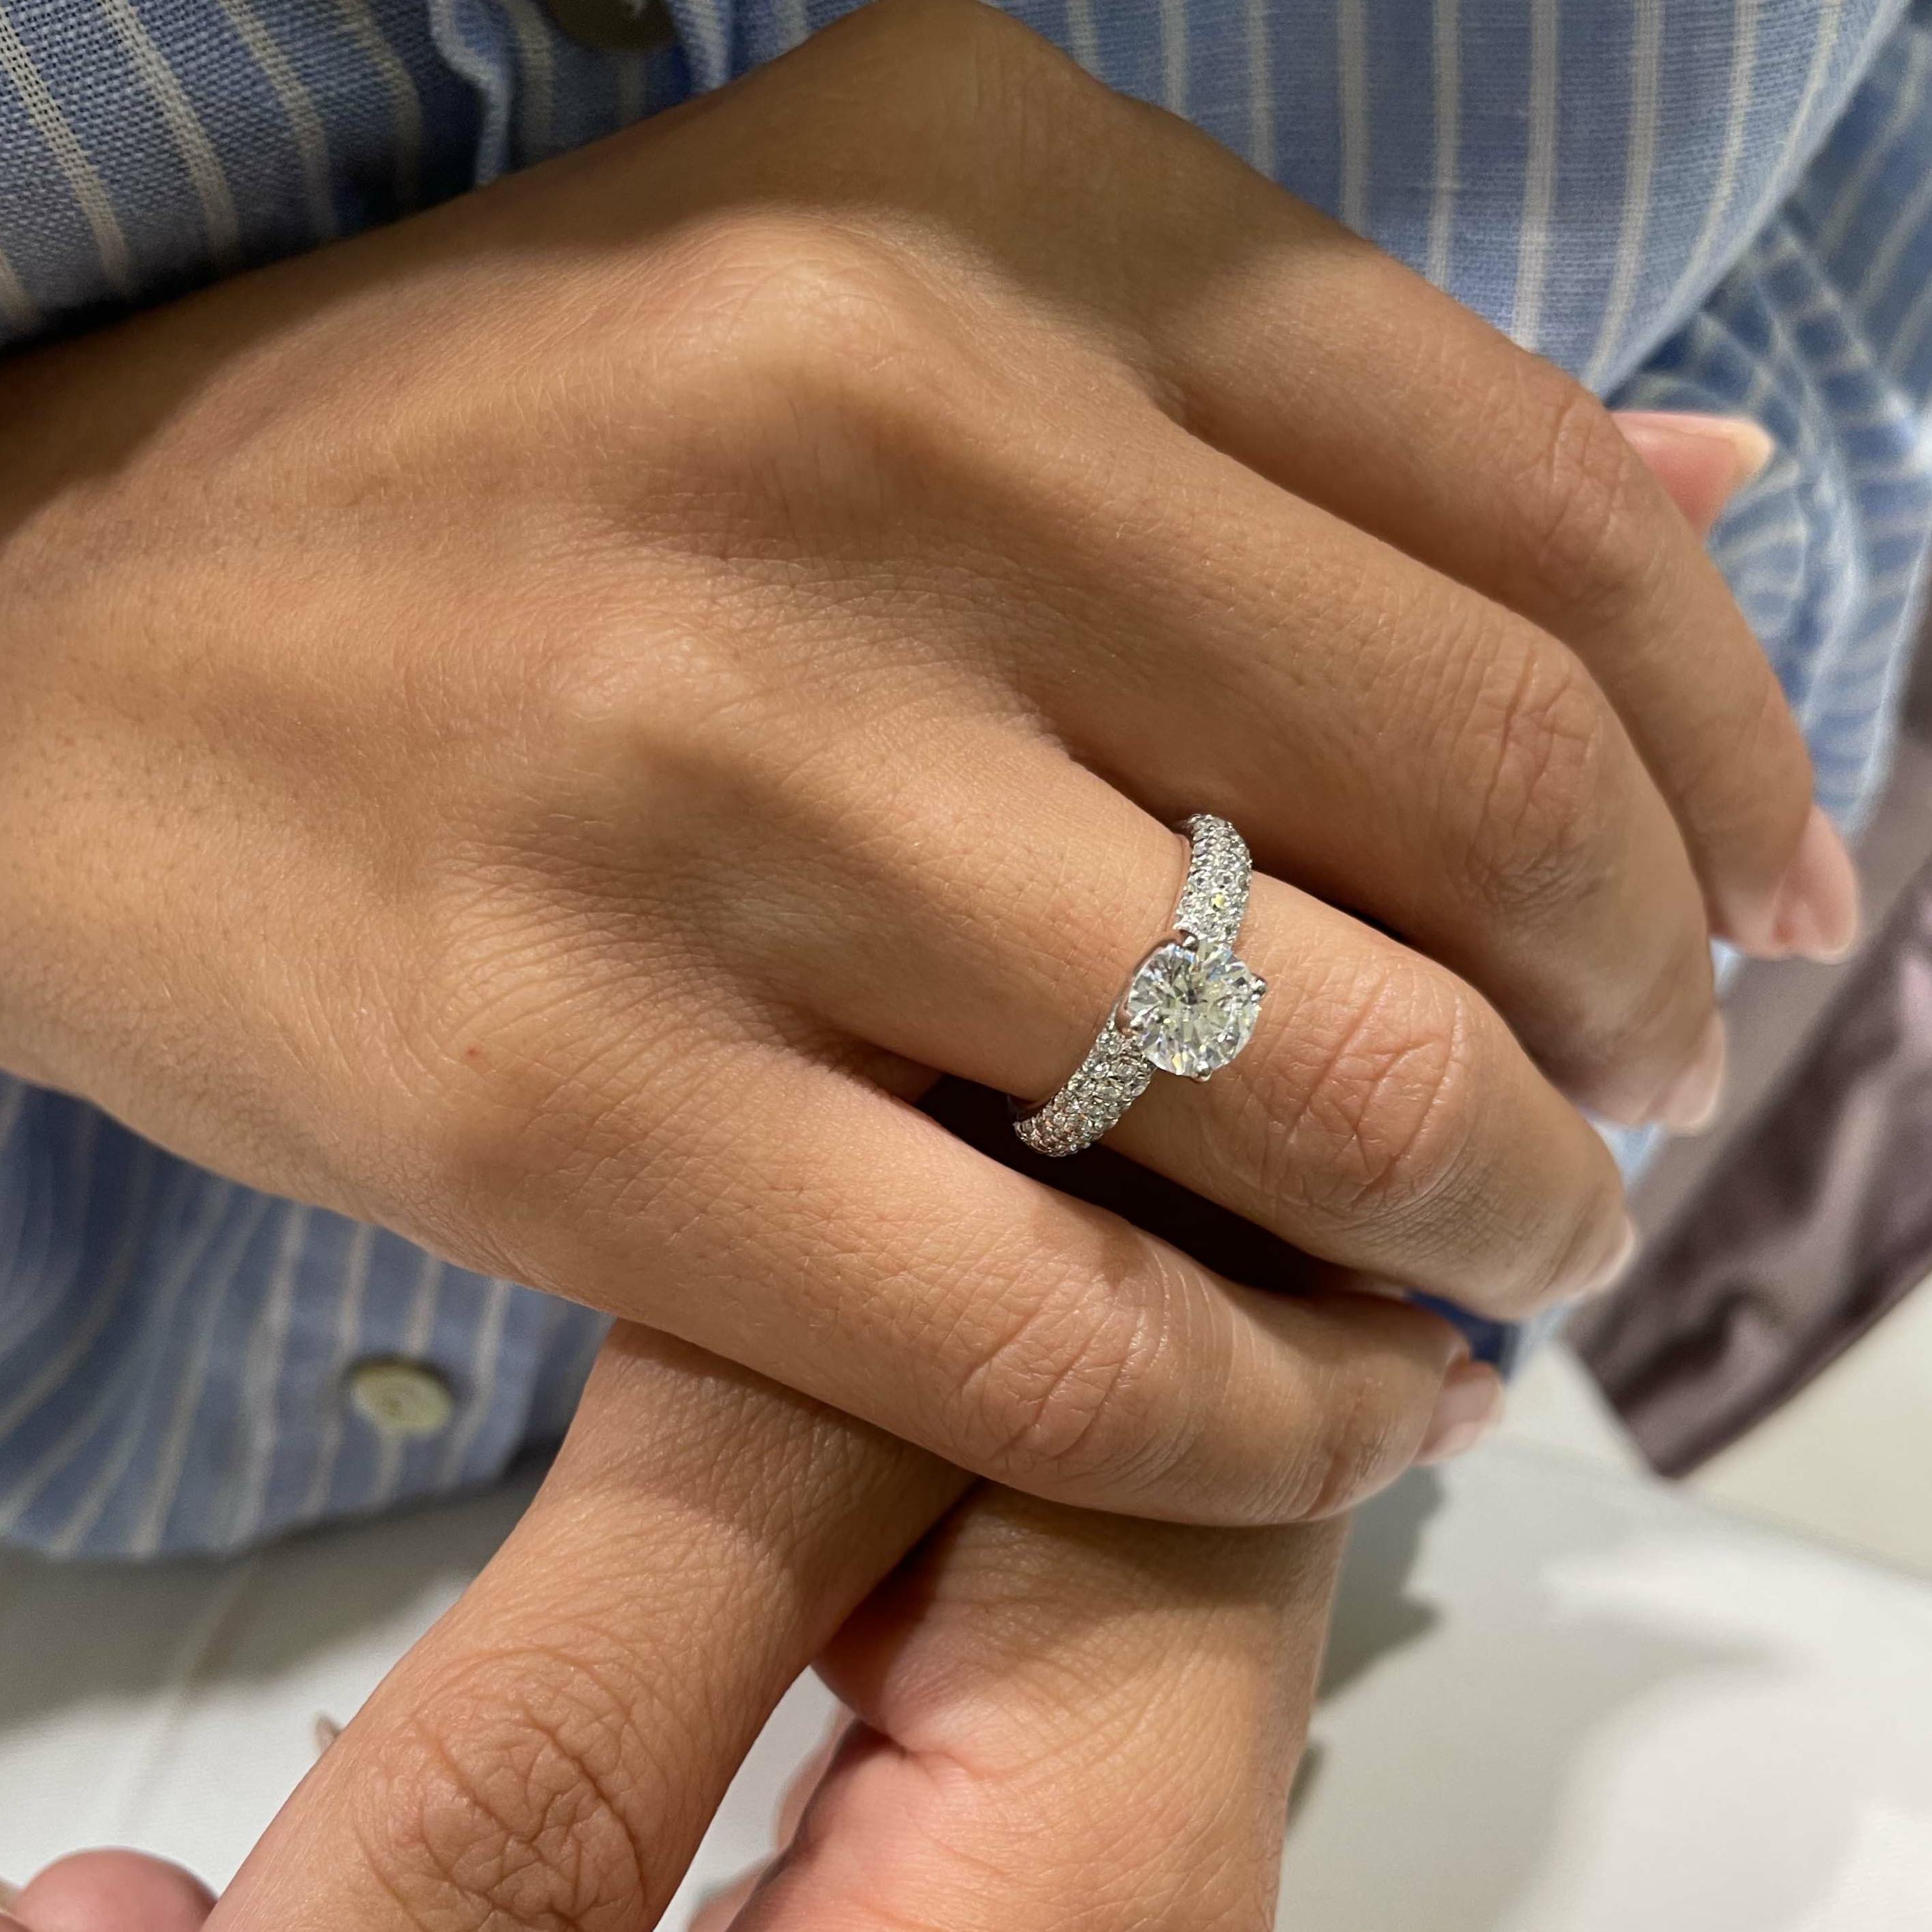 Alora Diamond Engagement Ring   (1.5 Carat) -18K White Gold